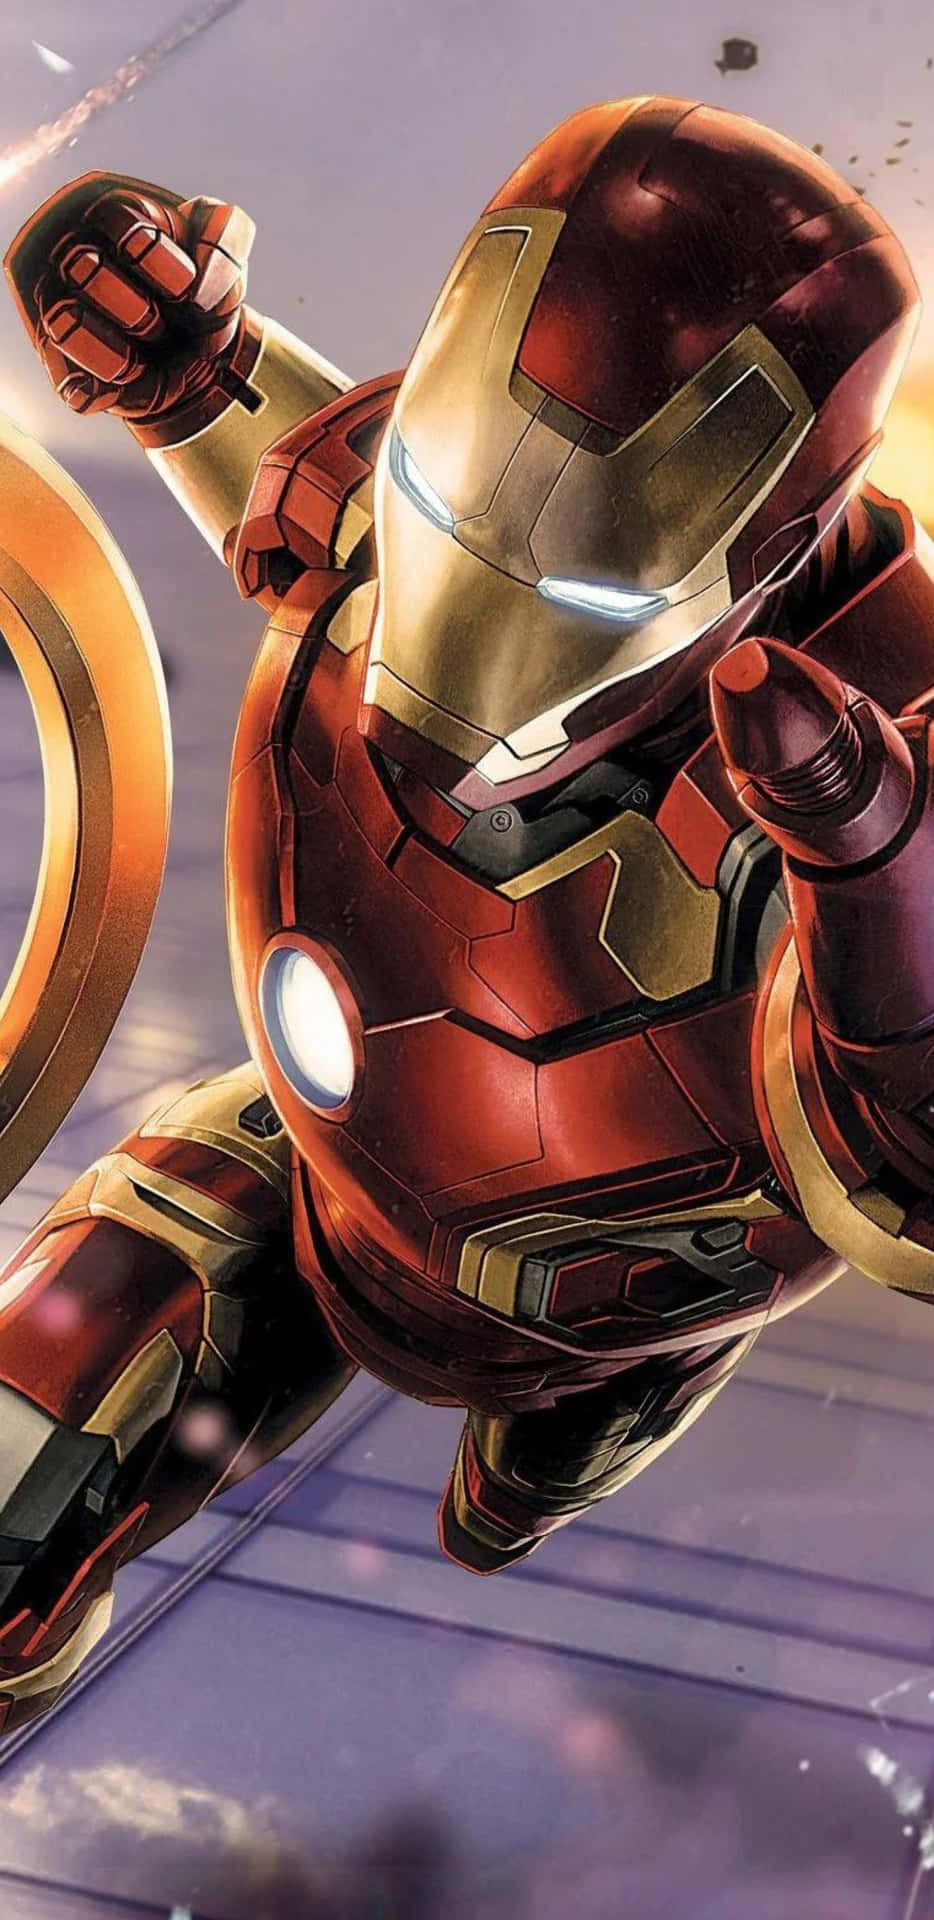 Pixel3xl Iron Man Punching Pose Bakgrundsbild.